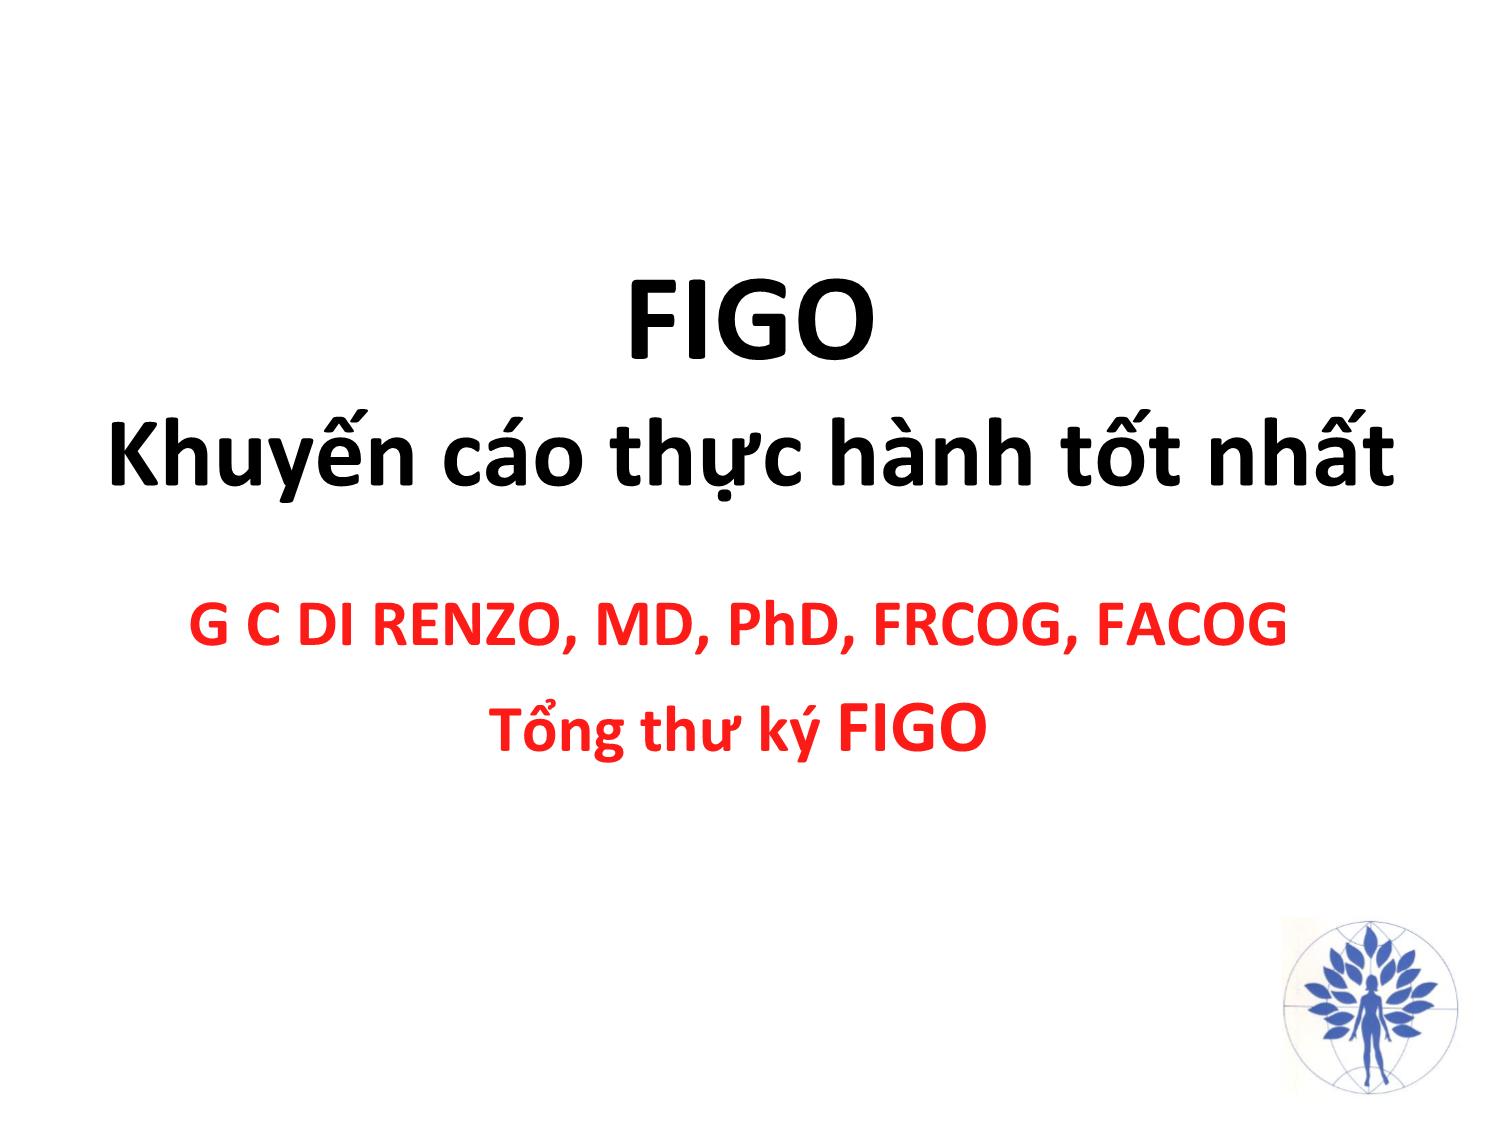 Bài giảng FIGO - Khuyến cáo thực hành tốt nhất trang 1